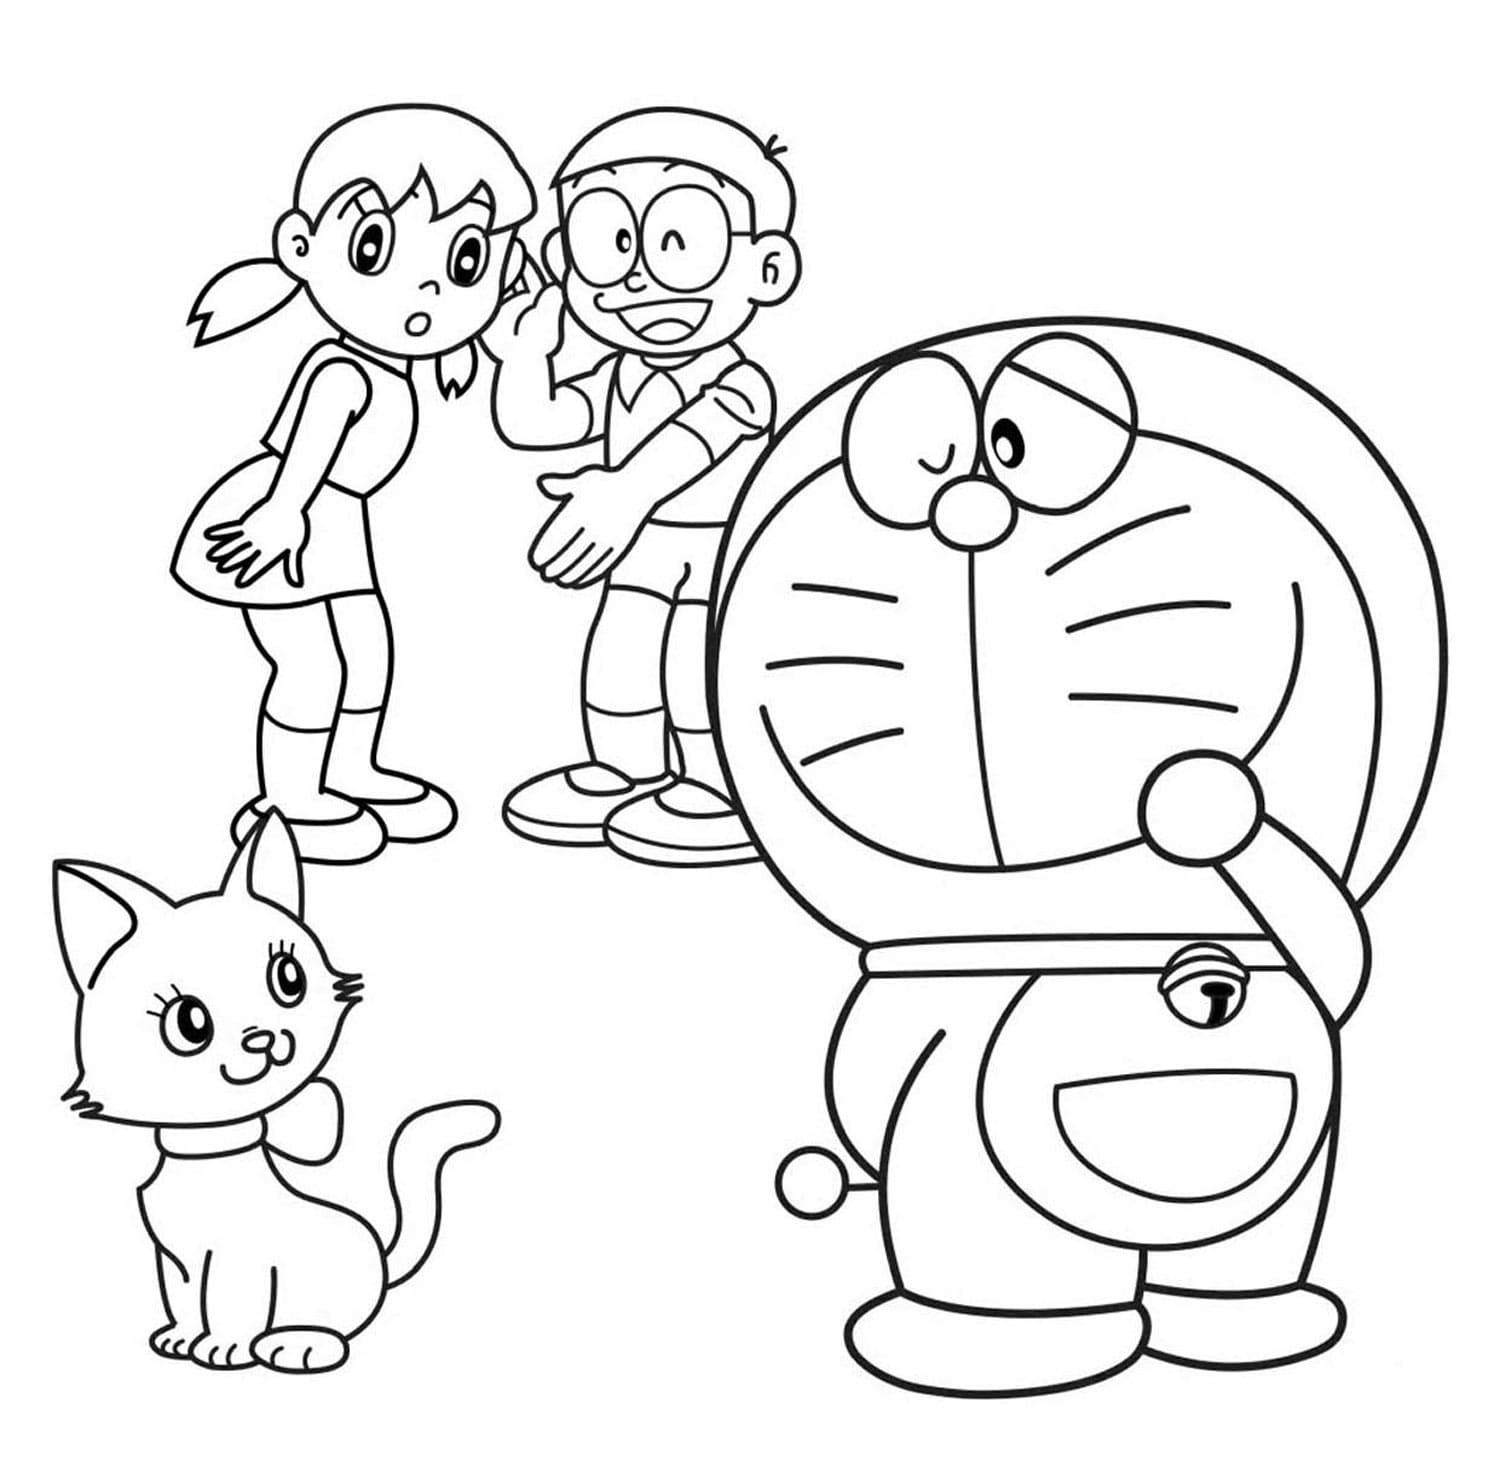 Bạn yêu thích vẽ tô màu? Hãy khám phá thêm về trang tô màu Doraemon của chúng tôi với những hình ảnh đẹp, đáng yêu và thiết kế tinh tế. Hãy giải trí và tạo sáng tạo cùng với Doraemon và những người bạn trong trang tô màu này.